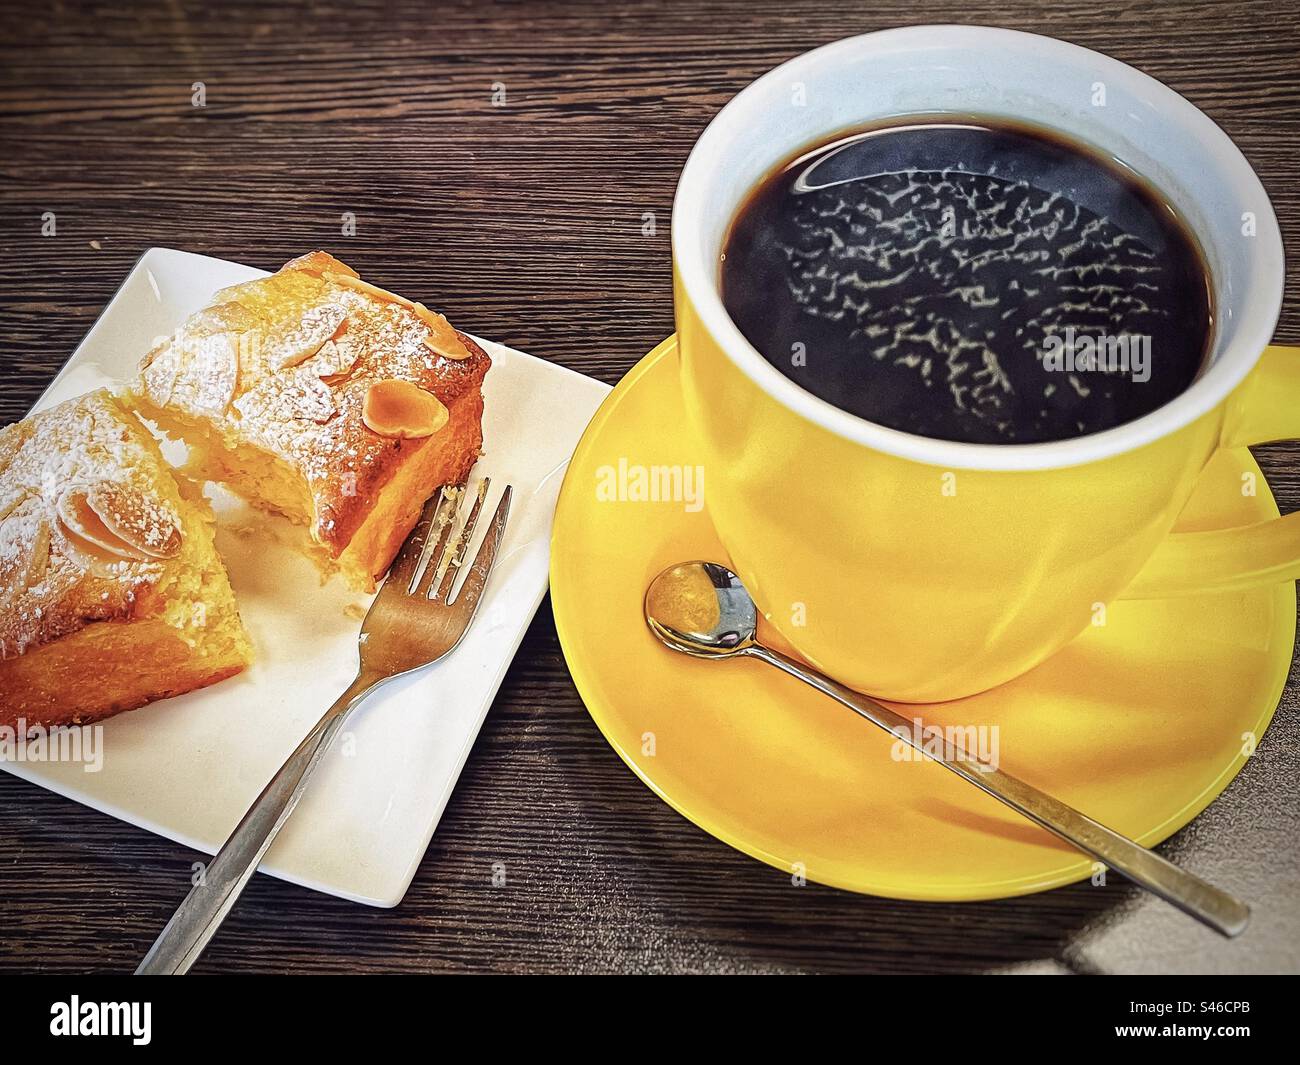 Schwarzer Kaffee/langer schwarzer Kaffee in einer gelben Kaffeetasse mit Untertasse und einer Scheibe glutenfreiem orangen Kuchen auf weißem Teller auf Holztisch. Snack, Kaffeepause, Teestunde. Stockfoto